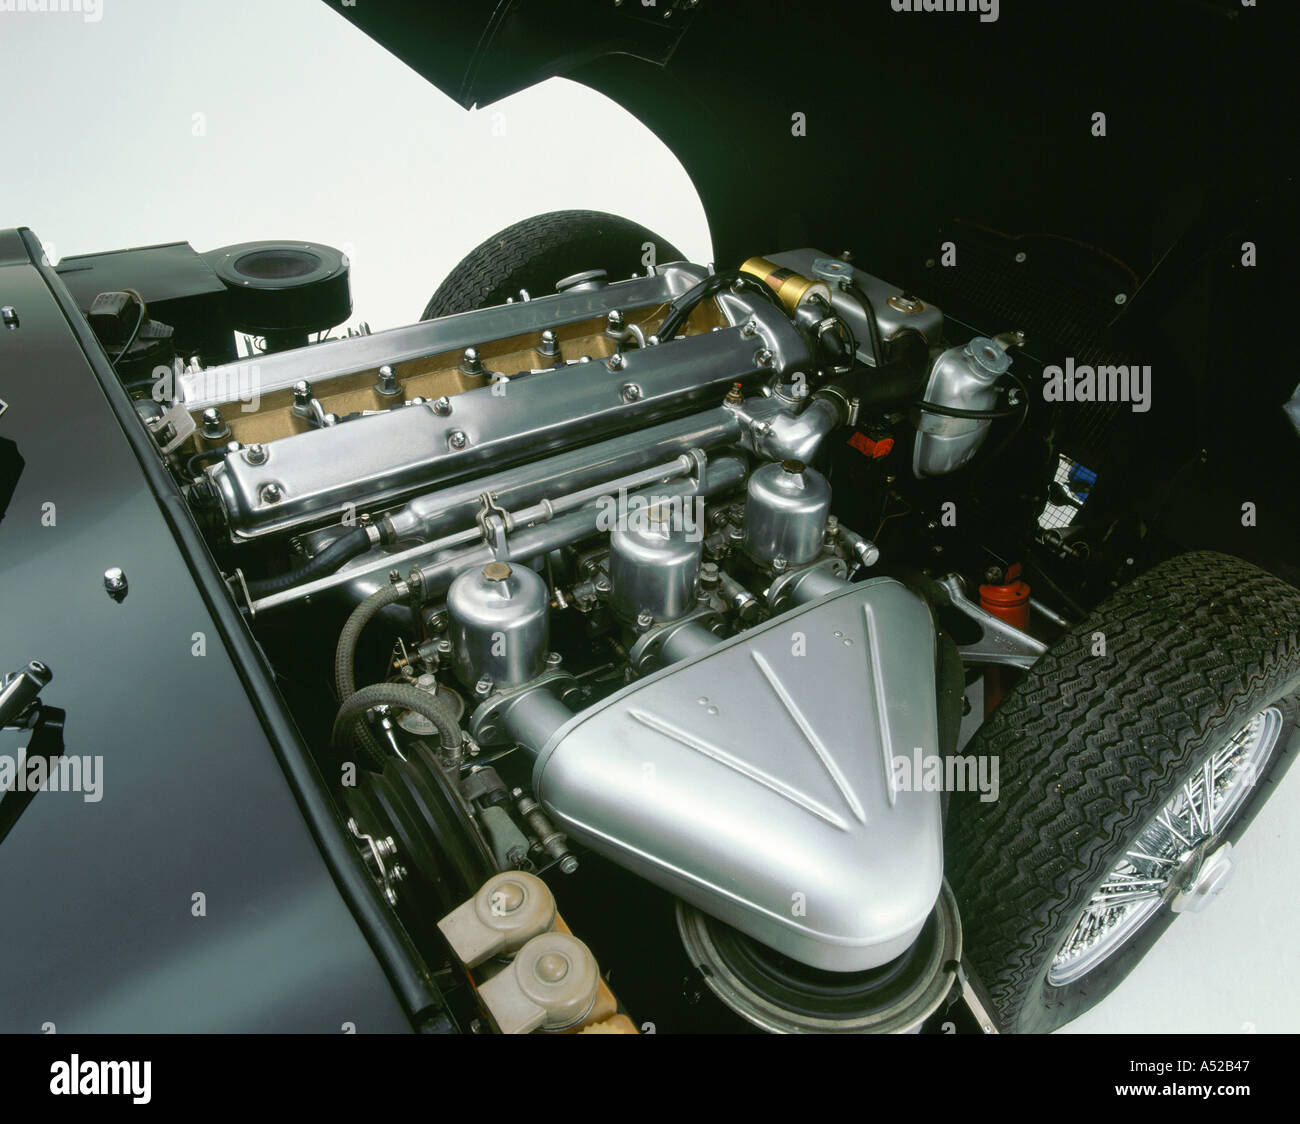 1964 Jaguar E type 3.8 6 cylinder engine Stock Photo